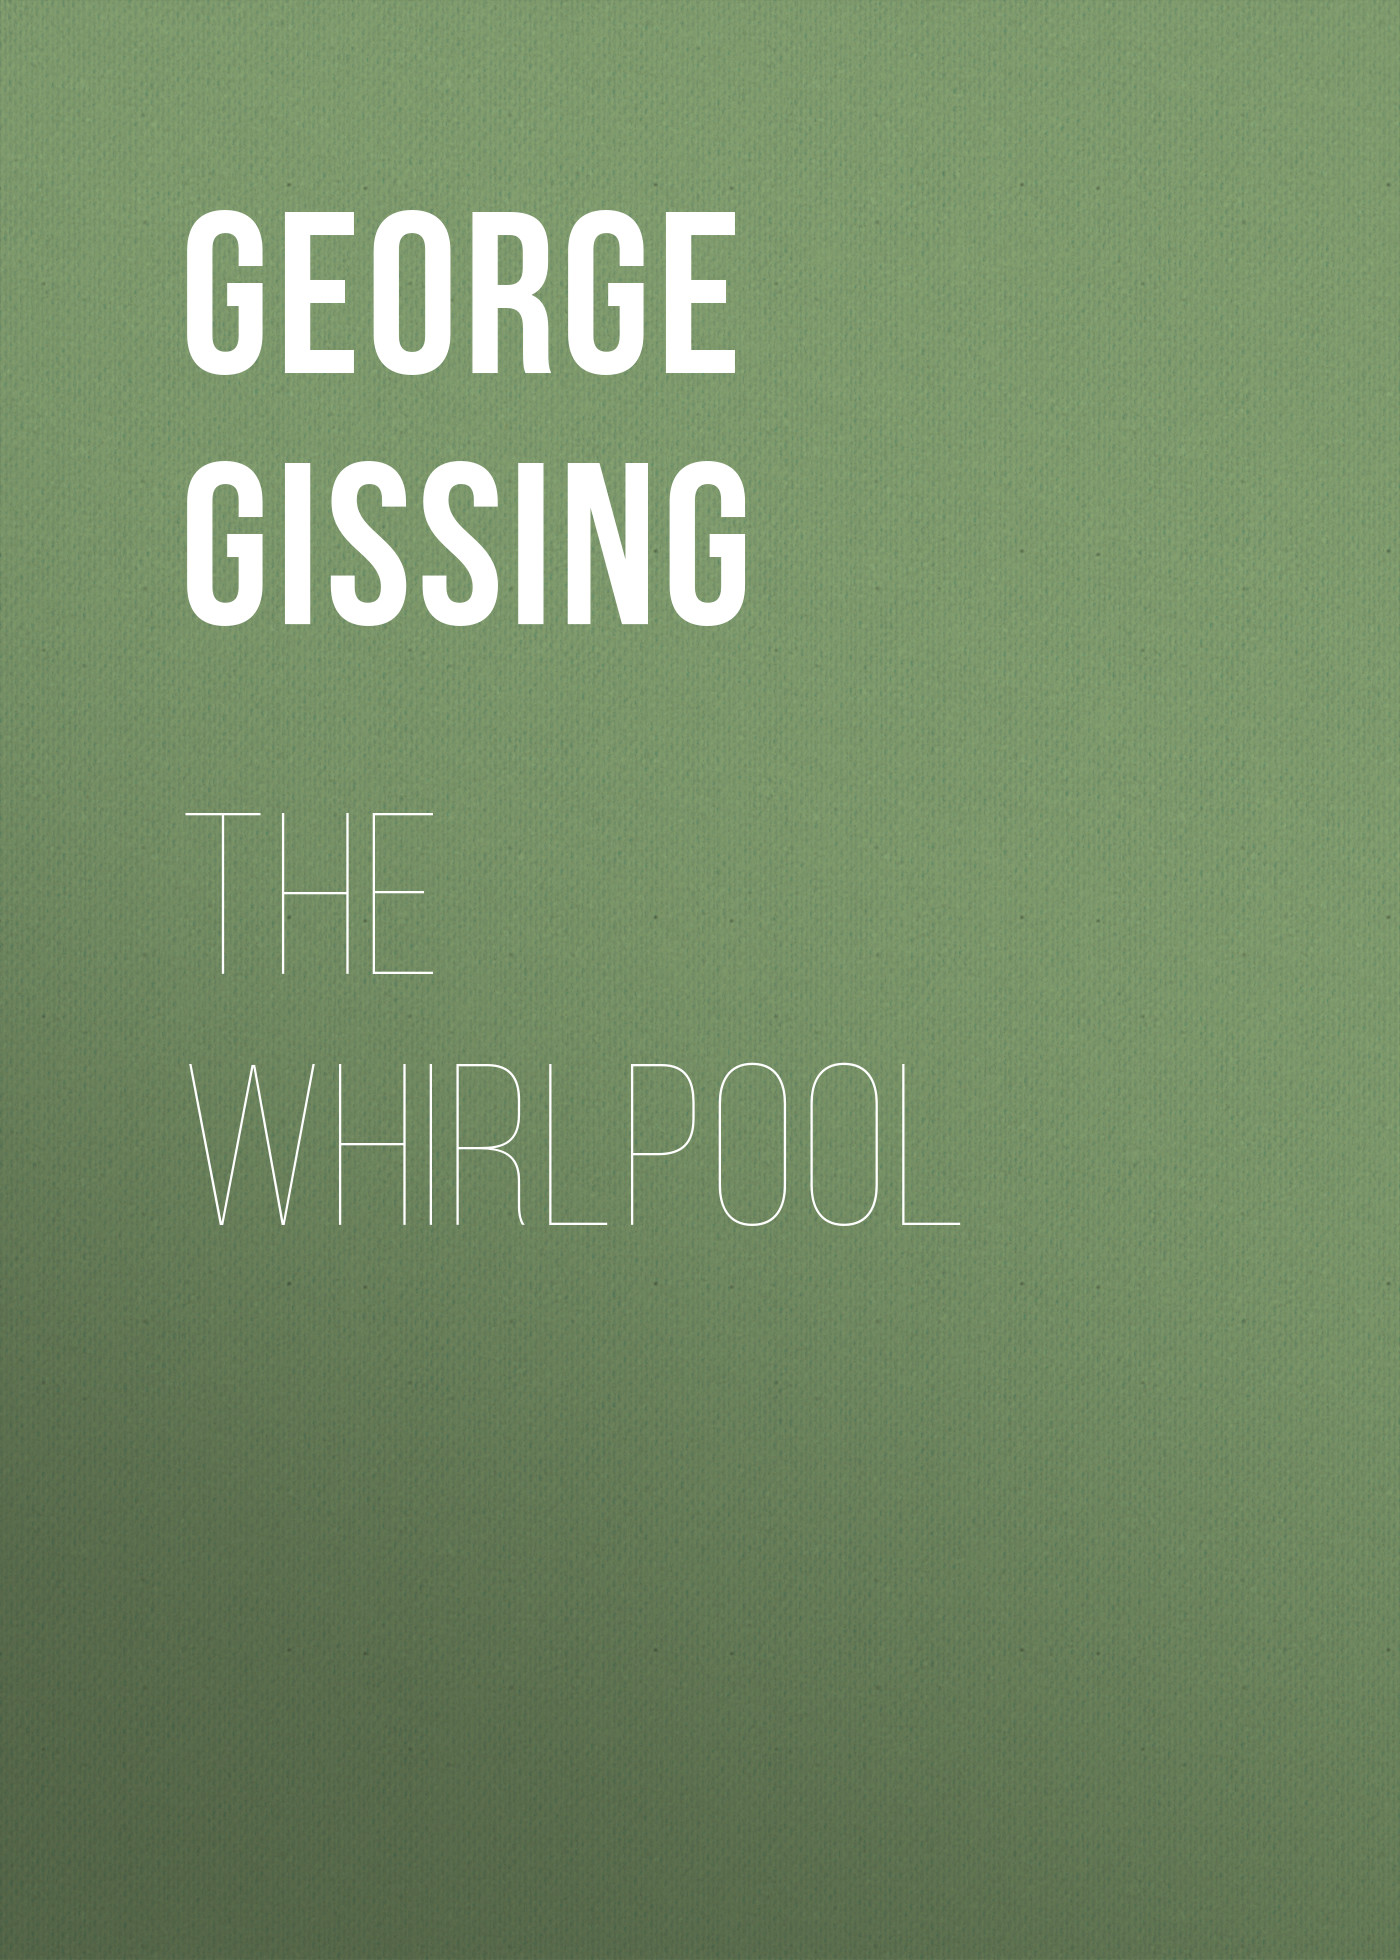 Книга The Whirlpool из серии , созданная George Gissing, может относится к жанру Зарубежная классика, Литература 19 века, Зарубежная старинная литература. Стоимость электронной книги The Whirlpool с идентификатором 38307009 составляет 0 руб.